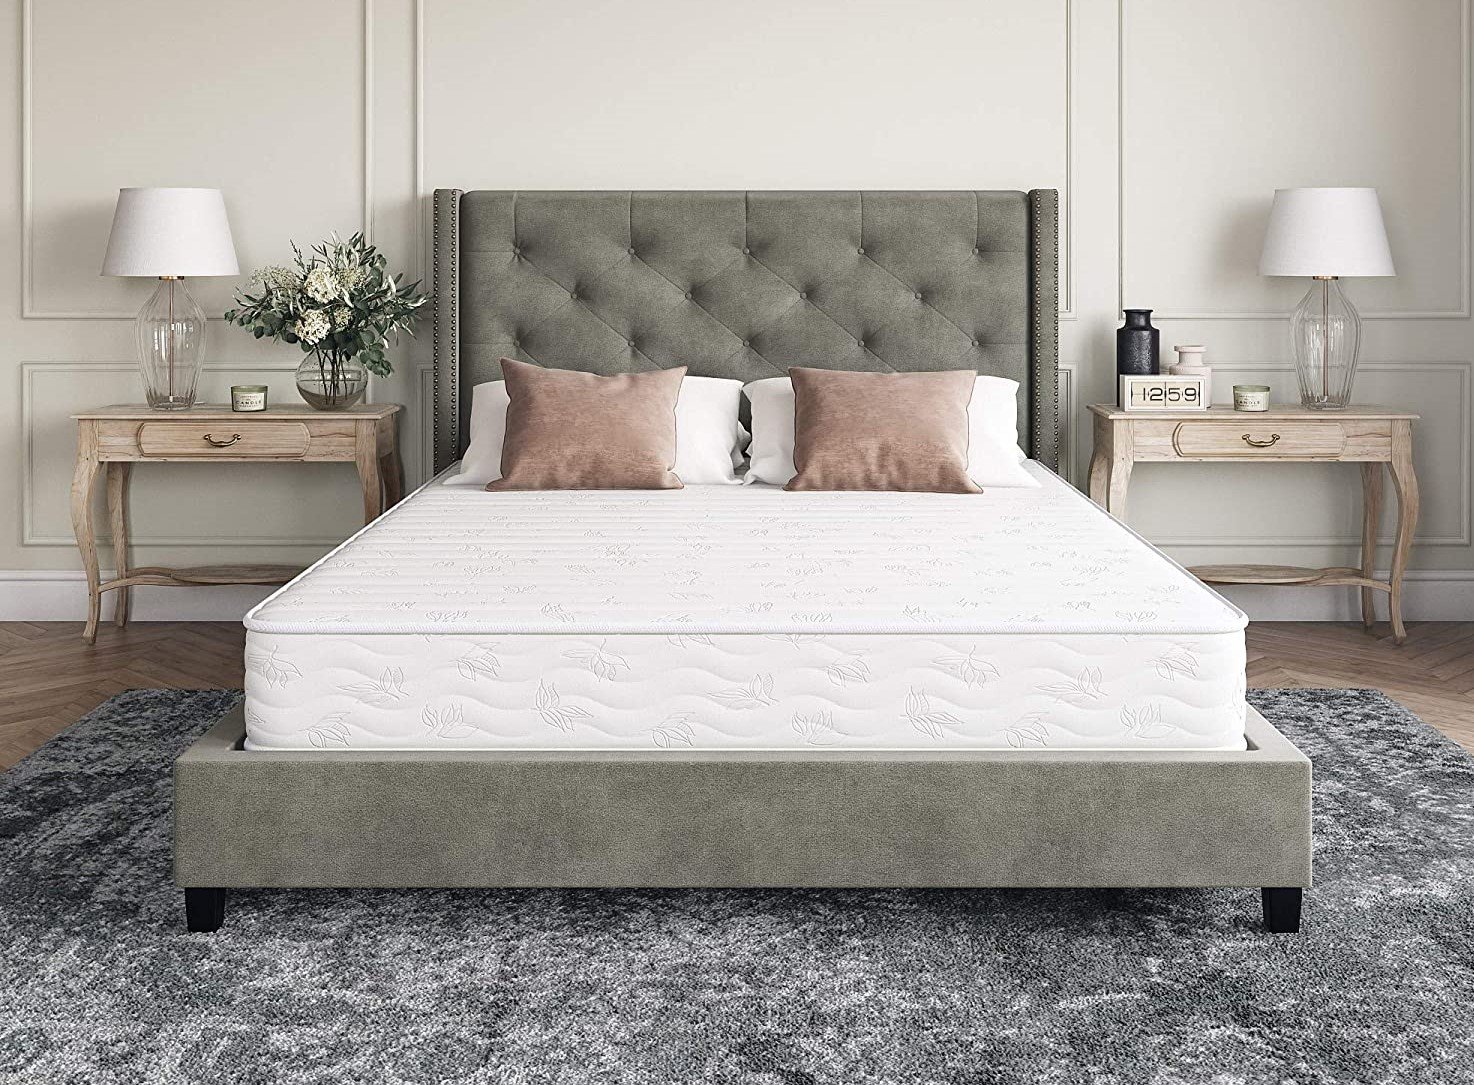 classic brands 8 firm cool gel mattress